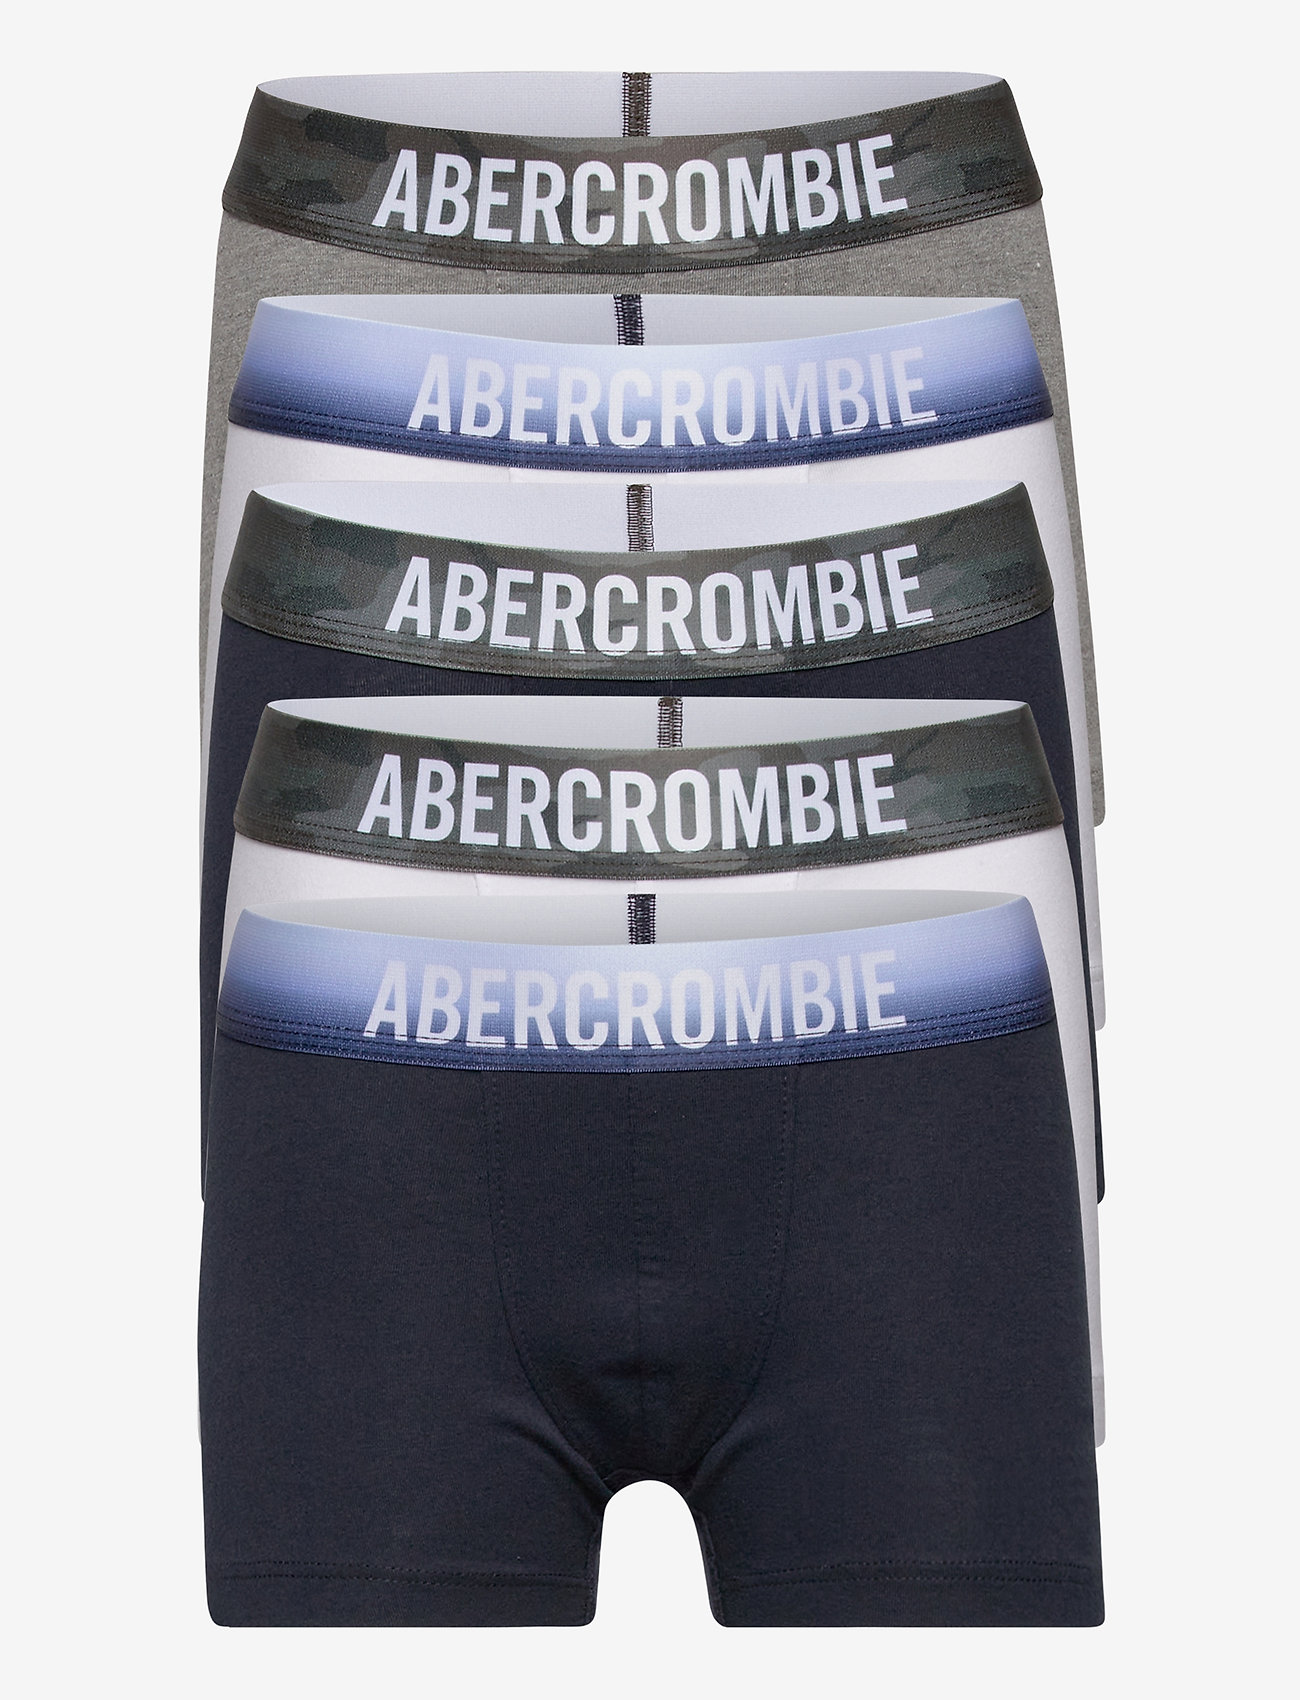 abercrombie underwear